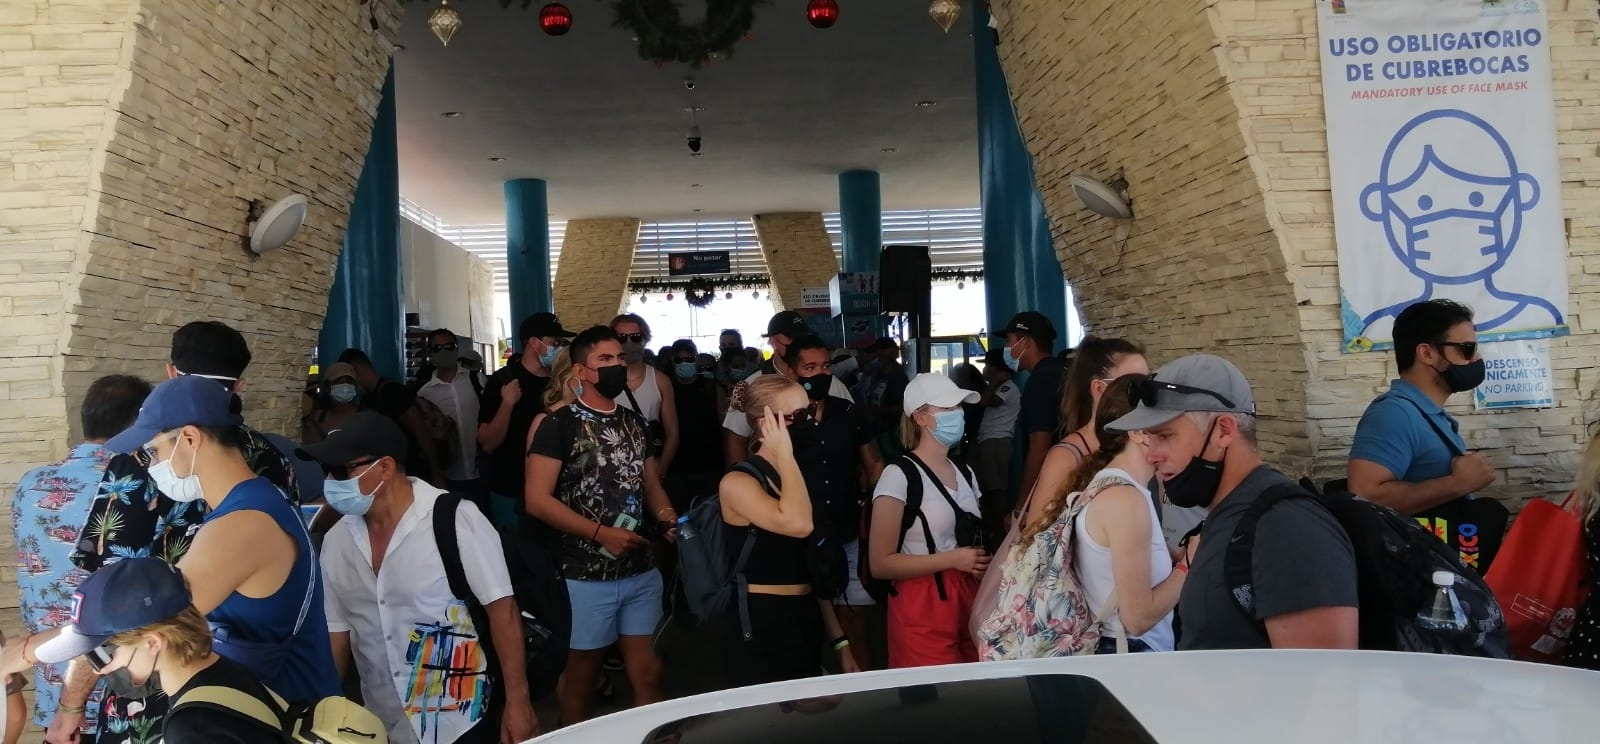 Terminal marítima de Isla mujeres presenta alta afluencia turística: VIDEO